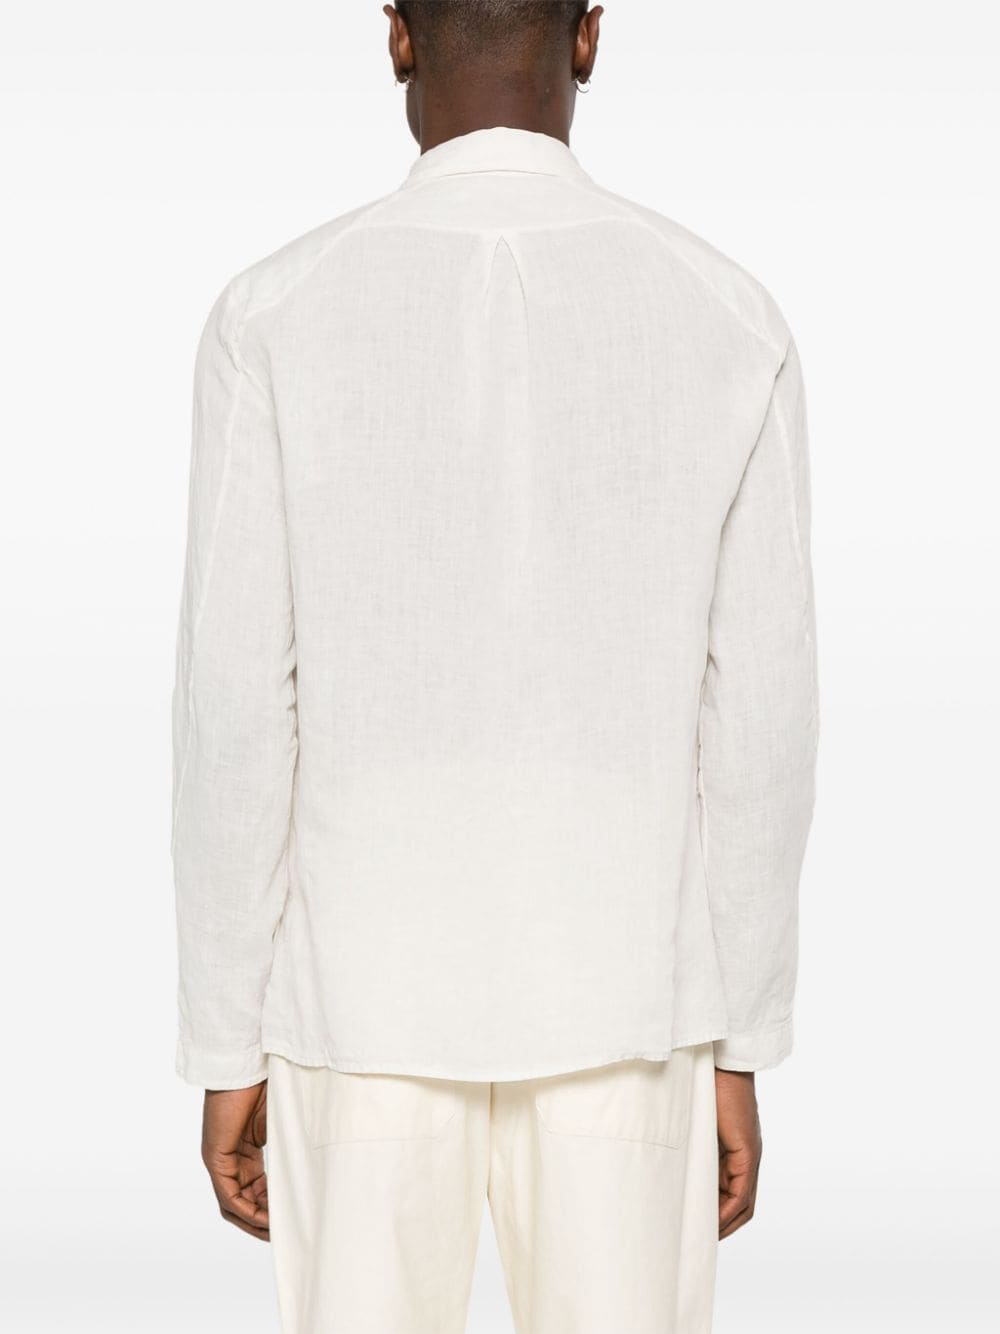 White long-sleeved linen shirt